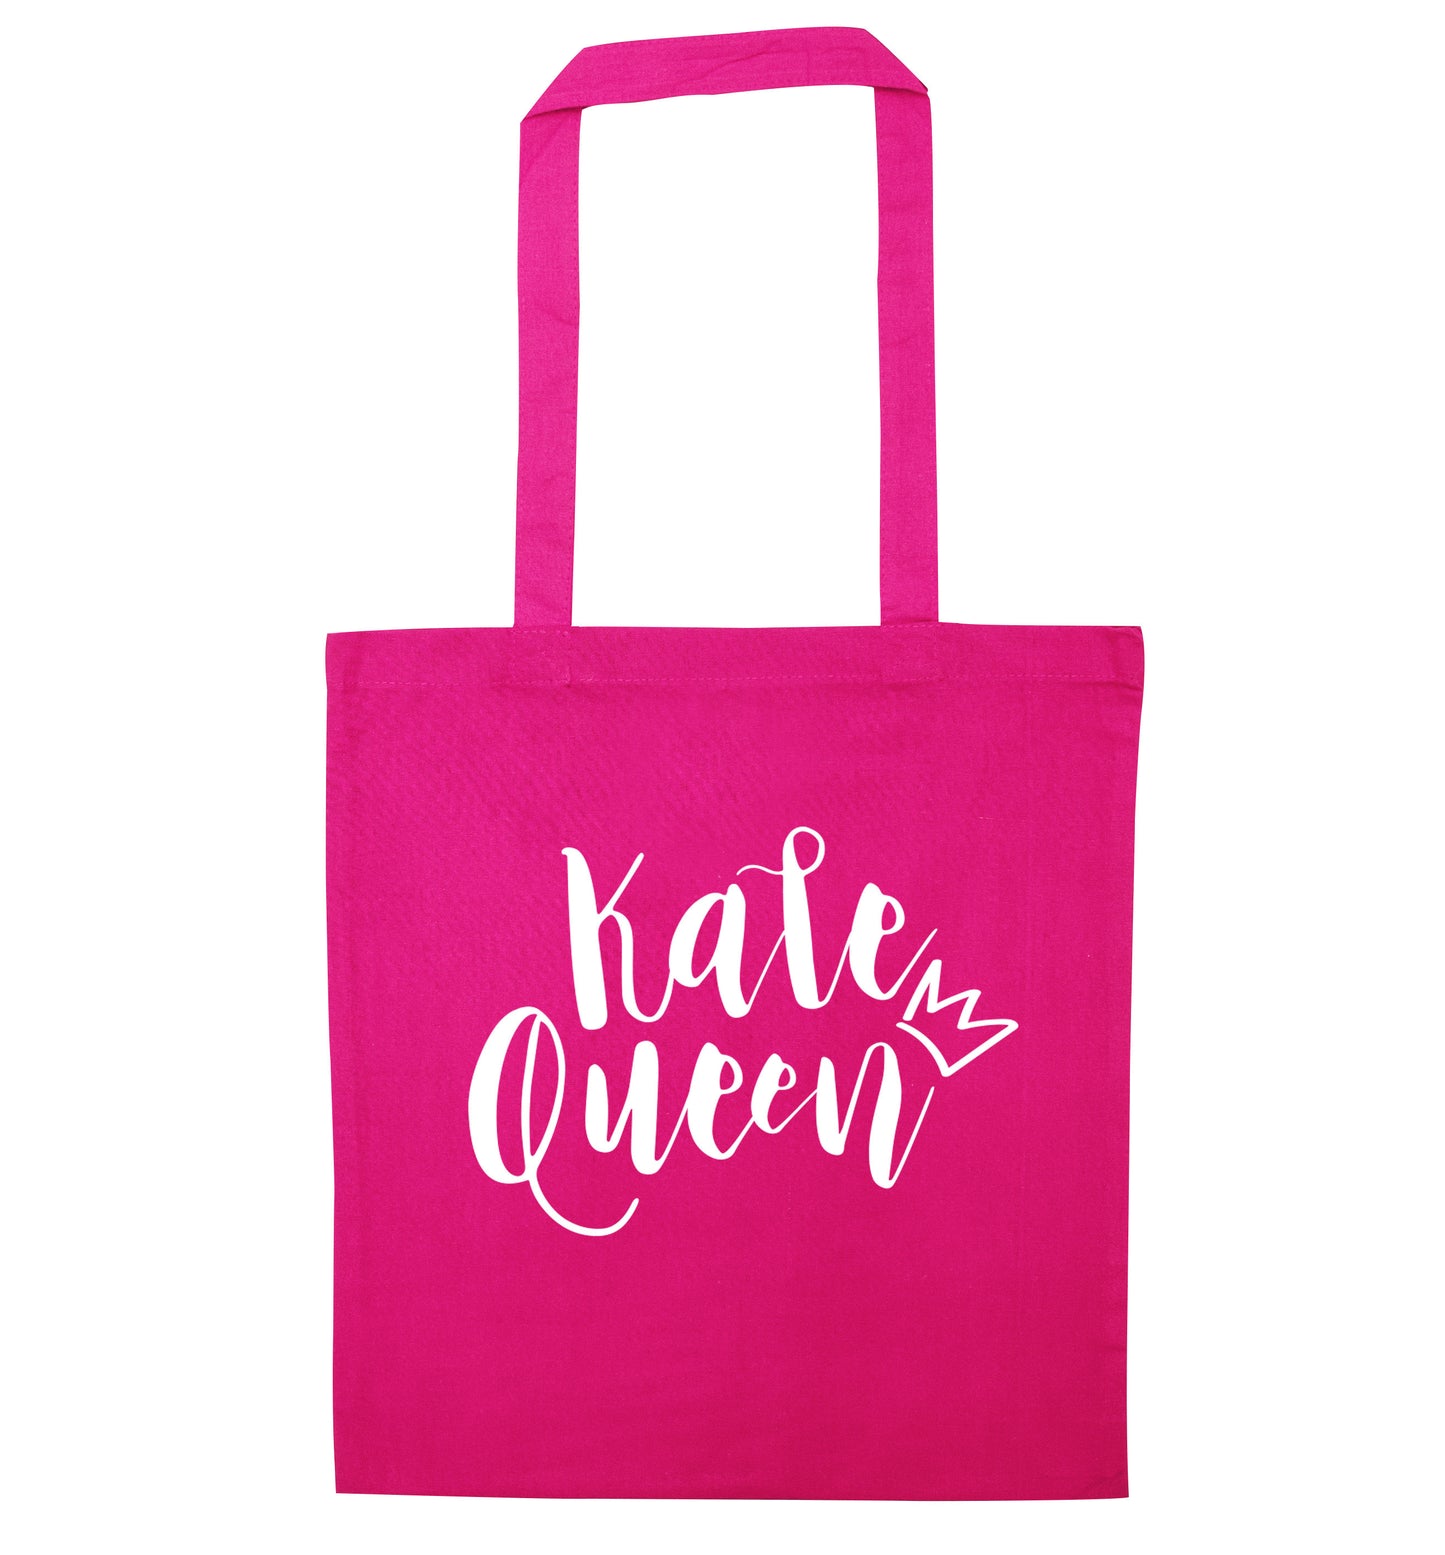 Kale Queen pink tote bag